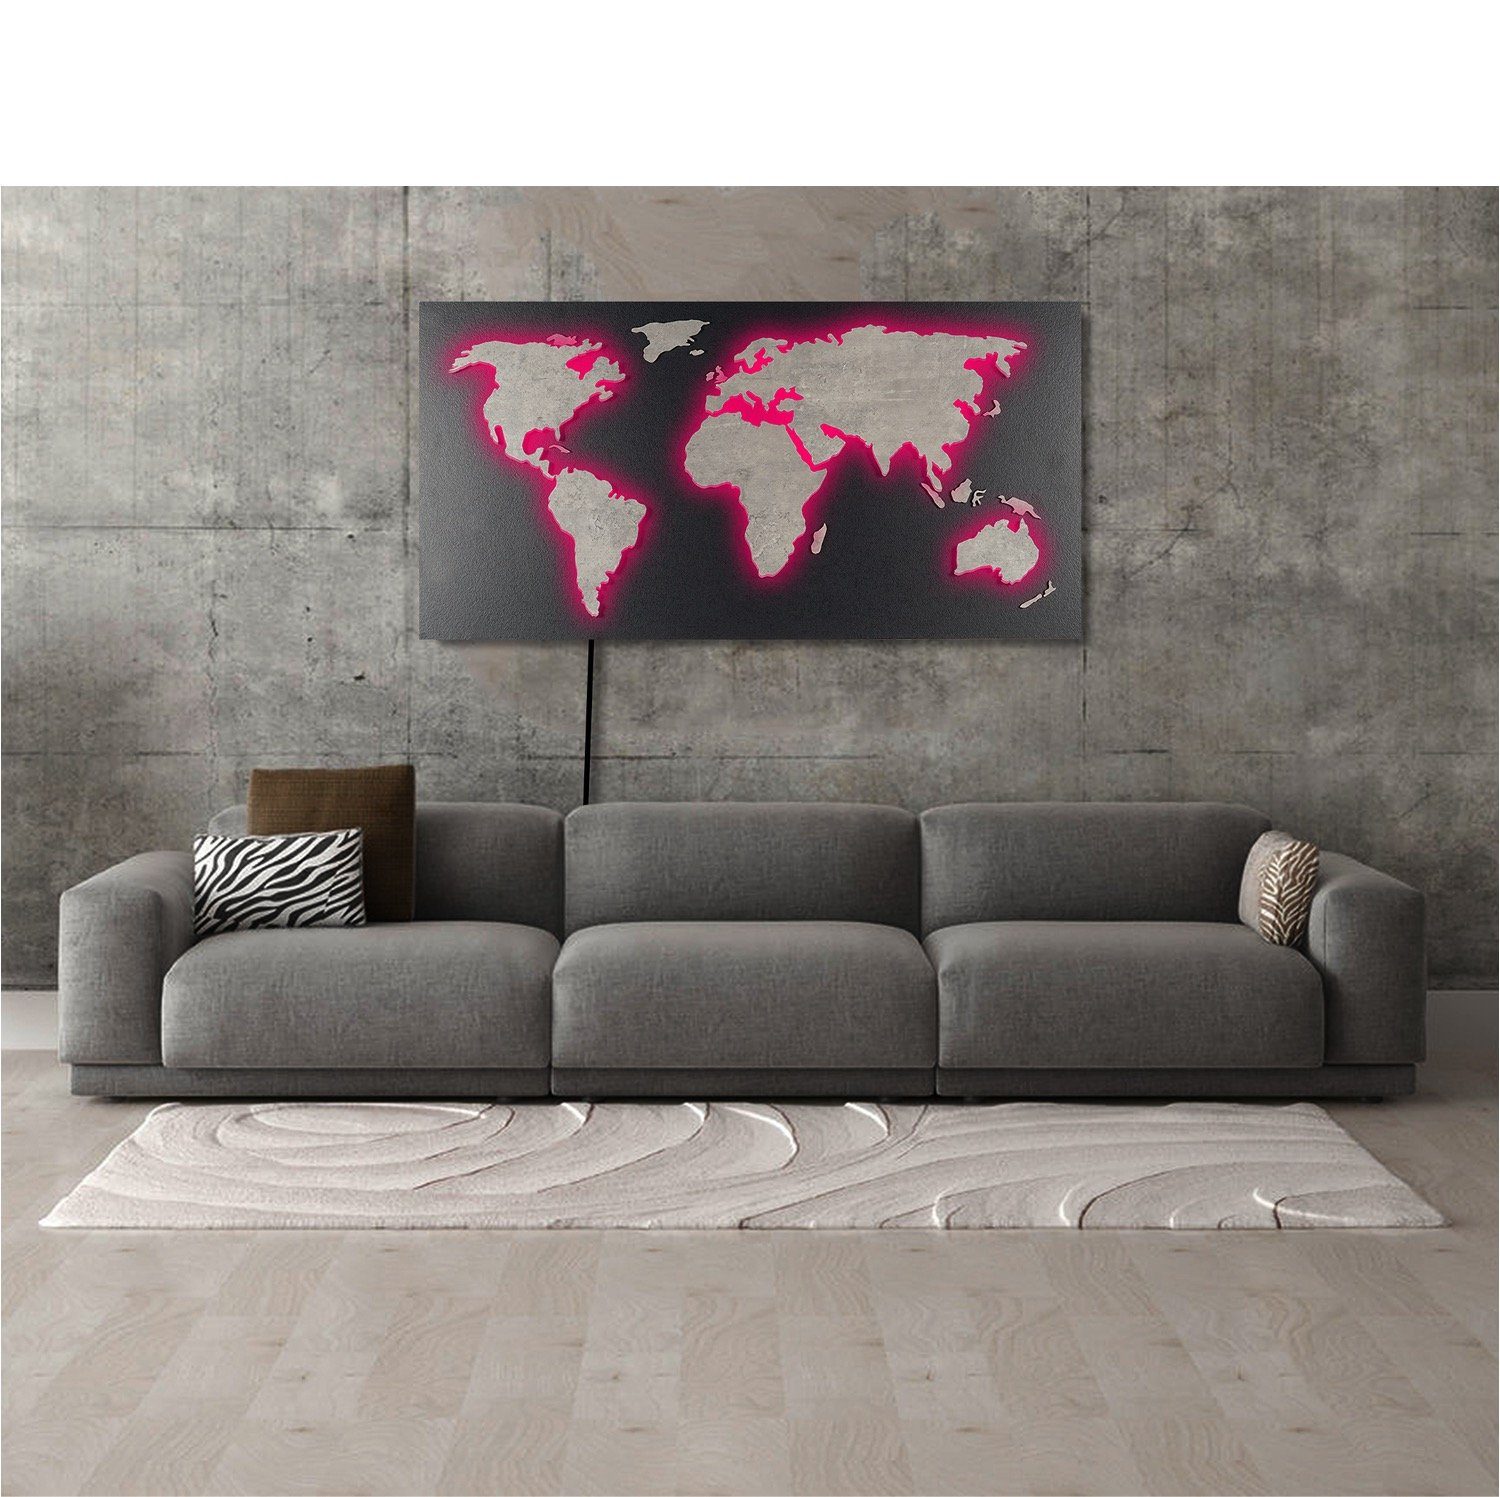 ZENLED Wanddekoobjekt Weltkarte MAPPA LUX STEIN-Optik 110x57cm - Designer Objekt 3D-Effekt, Kontinente umleuchtet mit bunt steuerbaren RGB LEDs über Fernbedienung Rückplatte Granit-Schwarz, Länder Beton-Grau